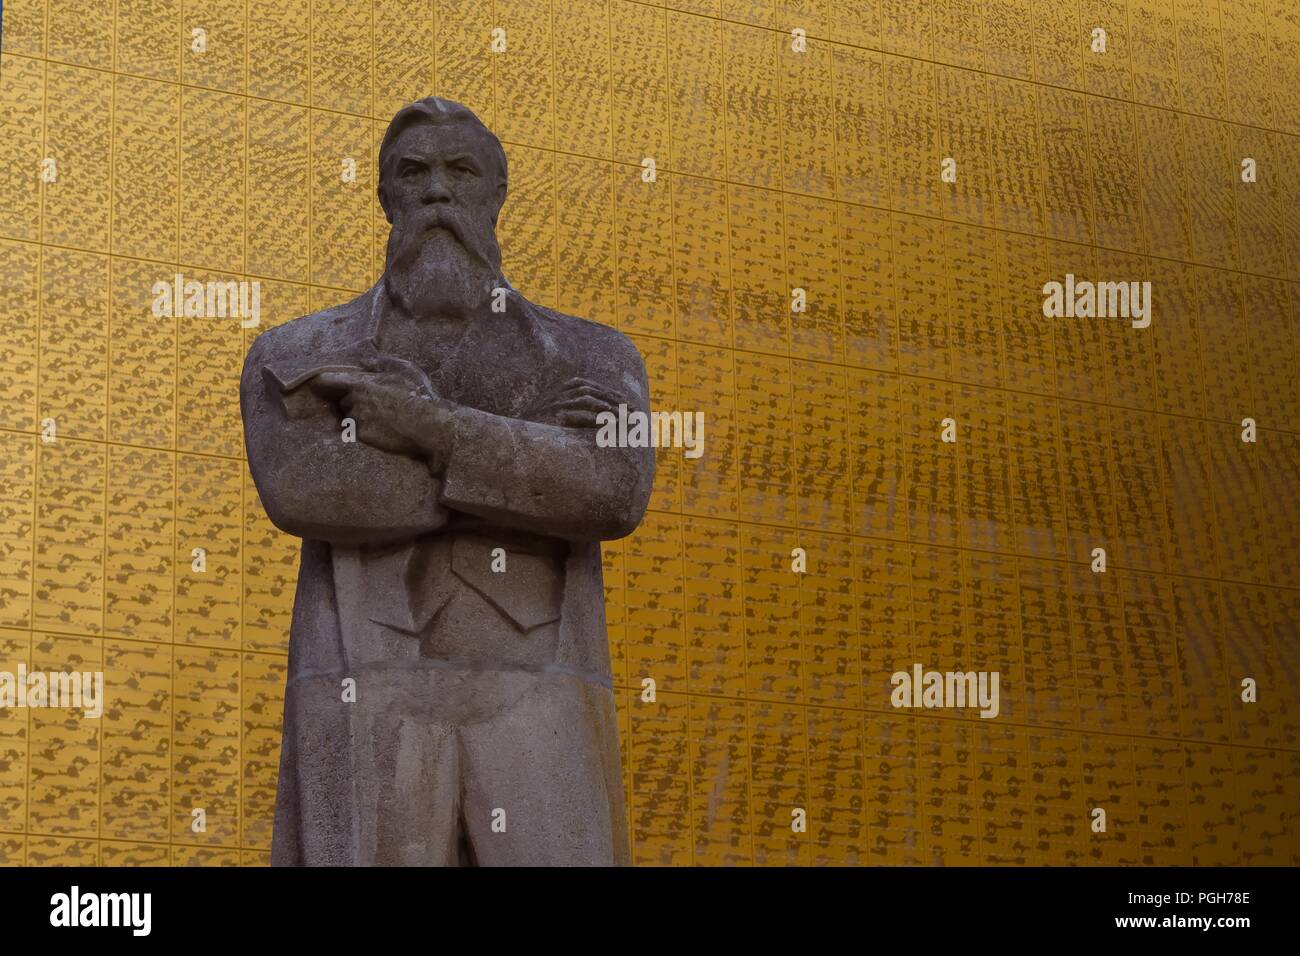 September 2017 - Ukrainische sowjetischen Statue von Friedrich Engels, in Manchester installiert; Engels gründete seine Philosophie die Beobachtung des Arbeitsmarktes Selbststä Stockfoto